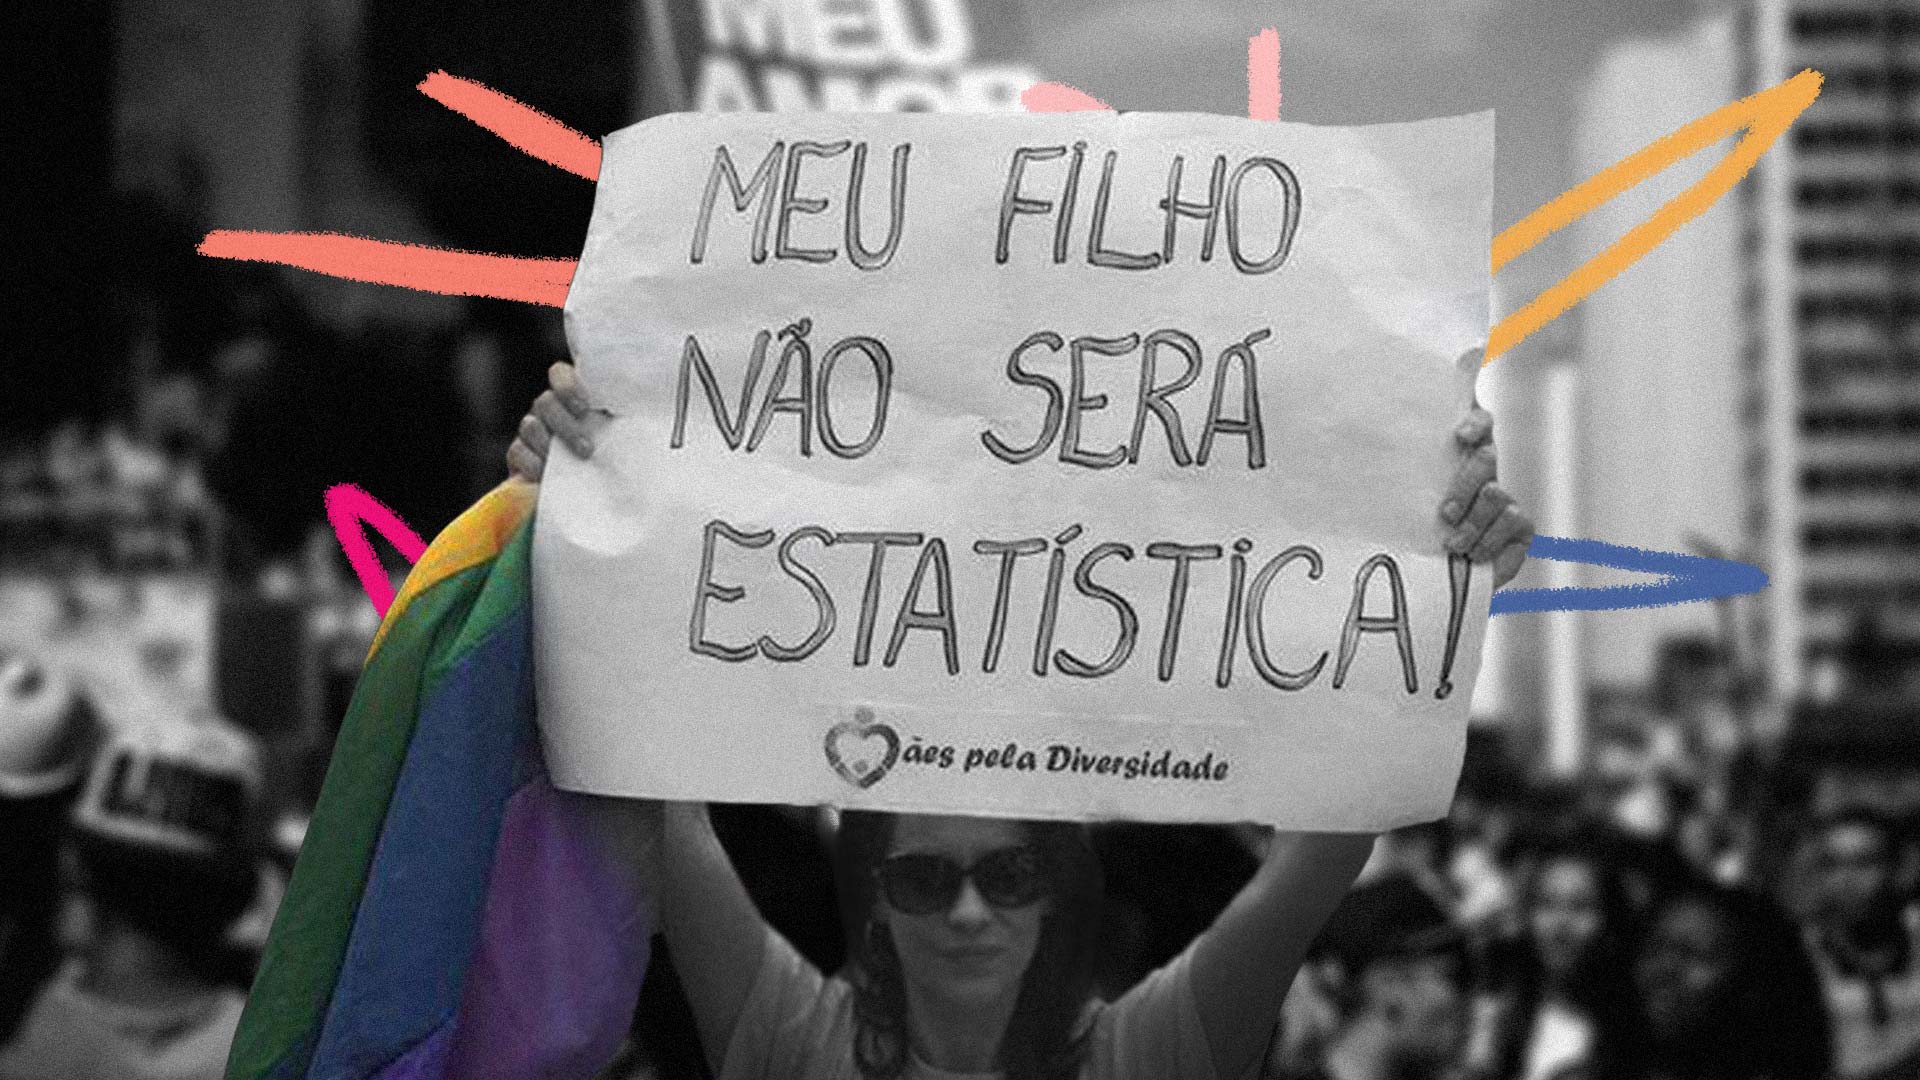 Coletivos de mães: Foto em preto e branco de uma mulher com um cartaz levantado escrito: "Meu filho não será estatística", e com a bandeira LGBT em suas mãos